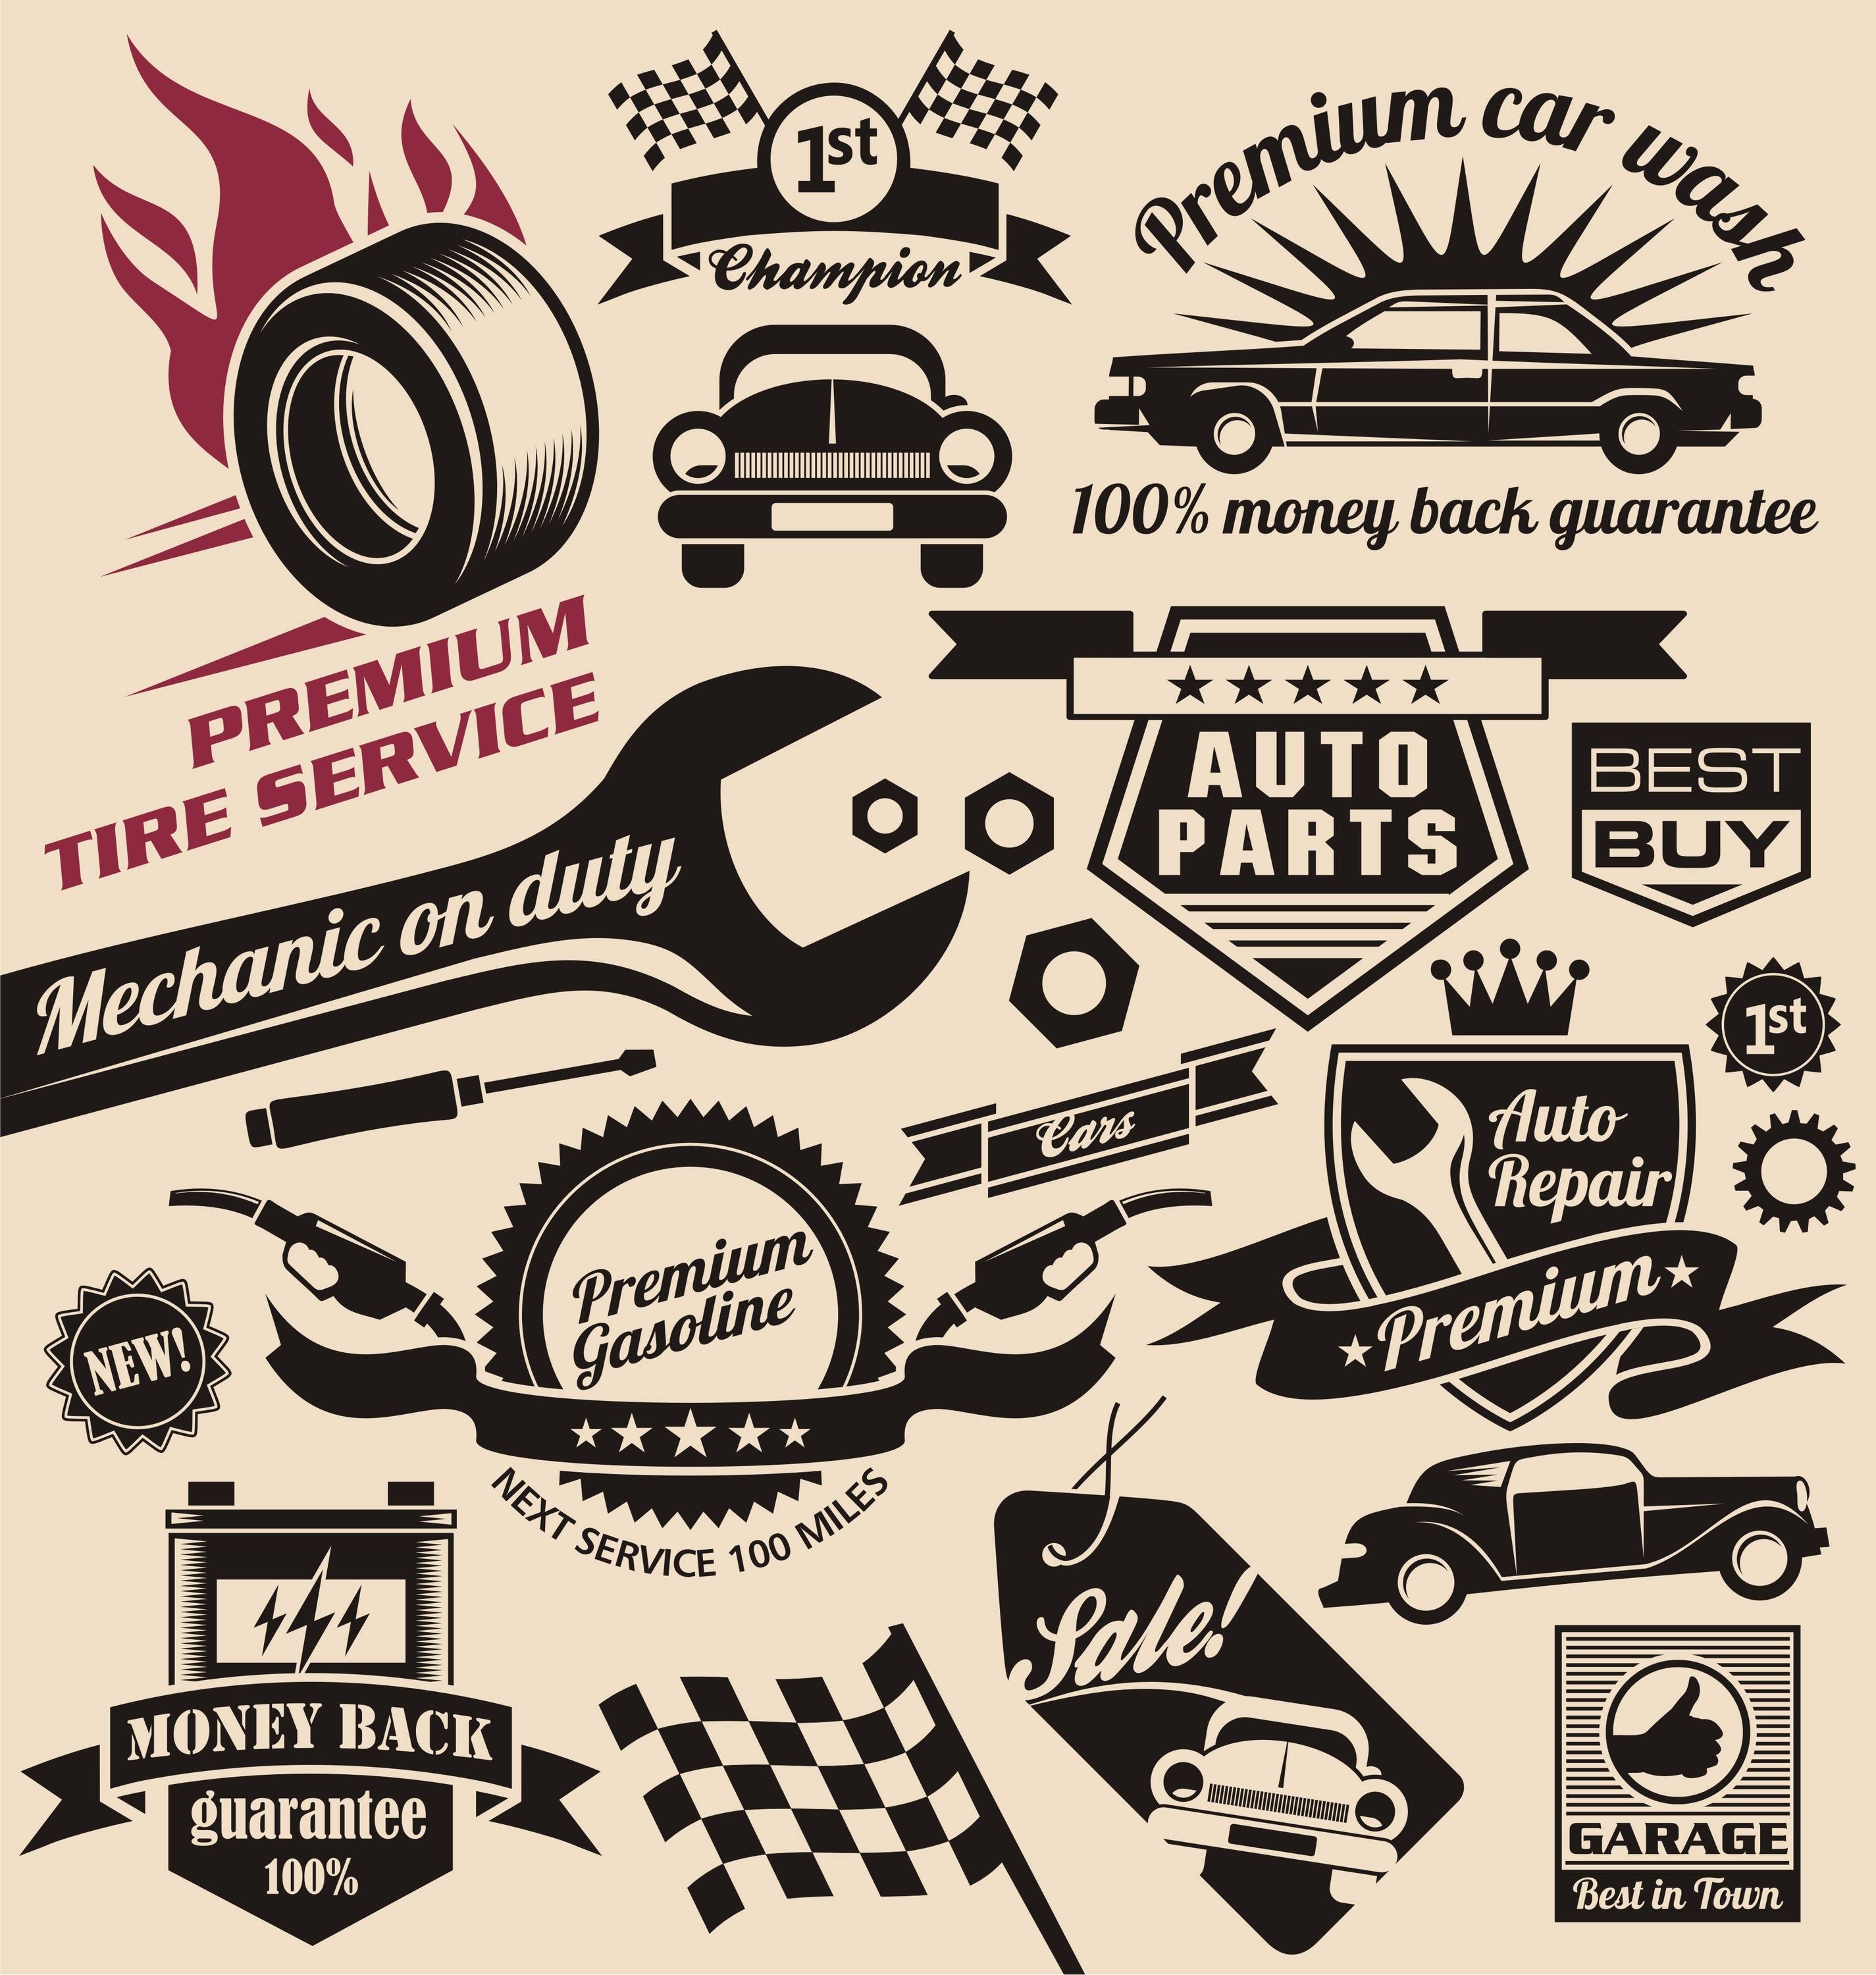 Vintage Automotive Repair Logo - Vector set of vintage car symbols and logos